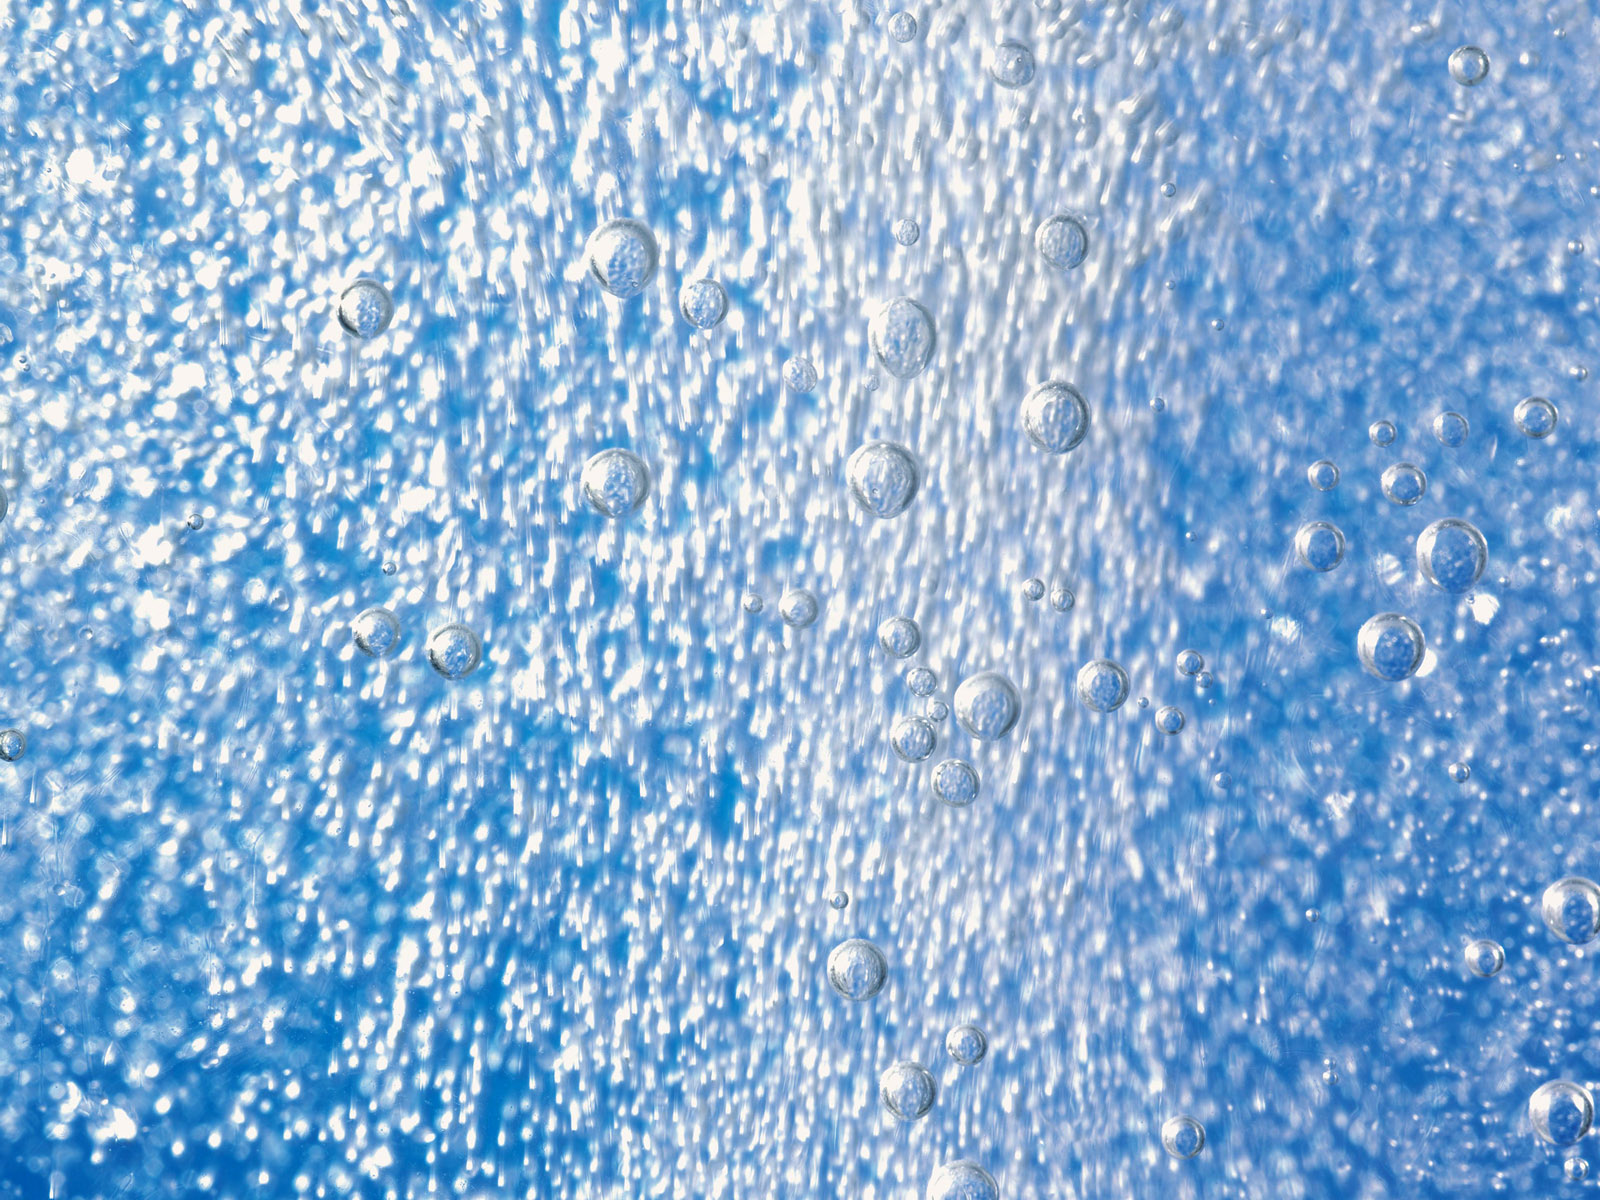 壁纸1600x1200水的韵律 5 18壁纸 水的韵律壁纸 水的韵律图片 水的韵律素材 炫彩壁纸 炫彩图库 炫彩图片素材桌面壁纸